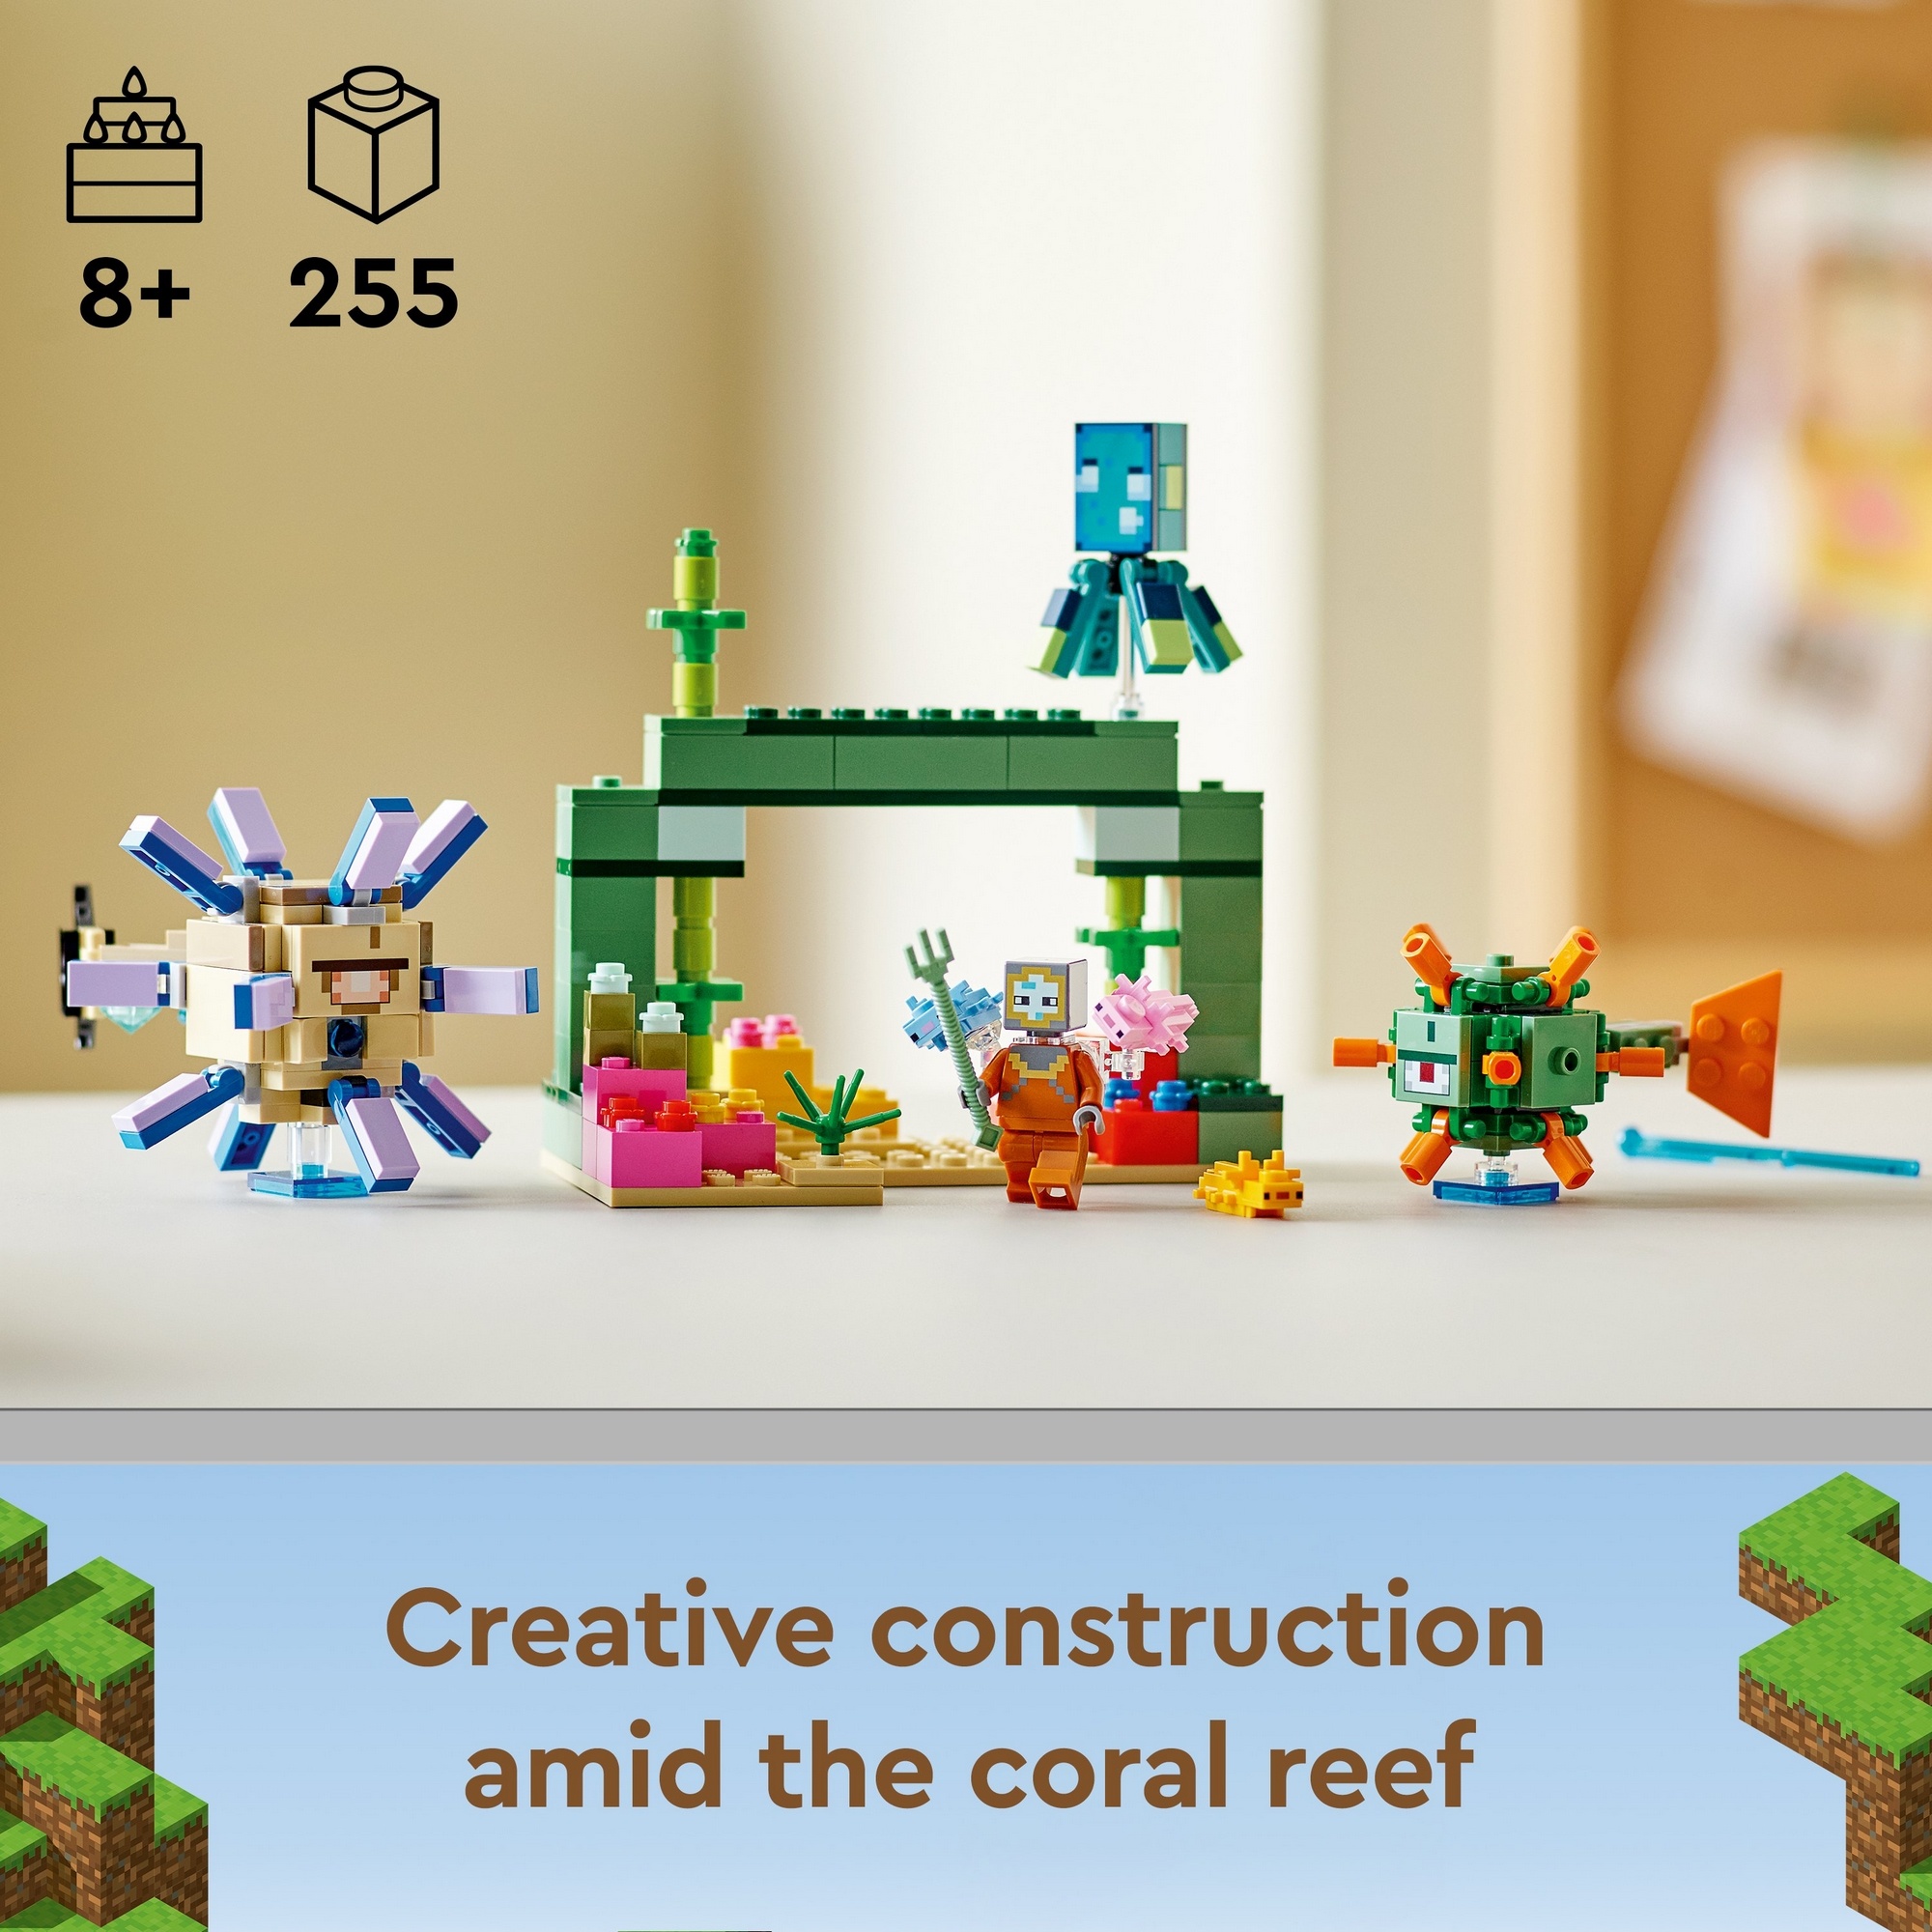 LEGO Minecraft 21180 Trận Chiến Giám Hộ Dưới Đáy Biển (255 chi tiết)